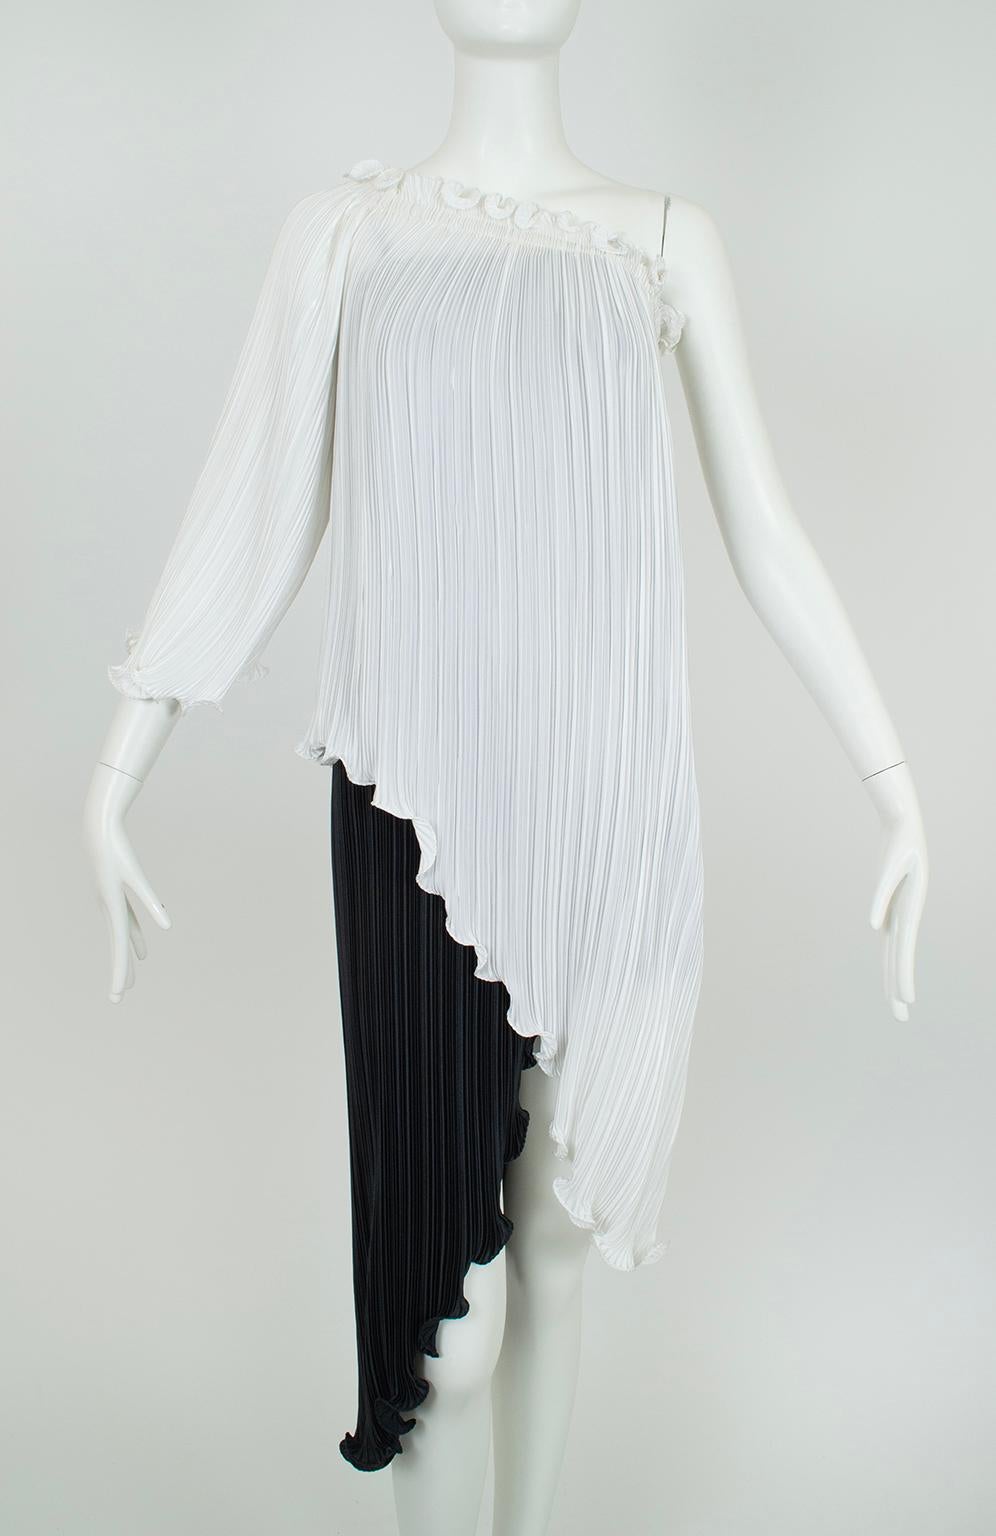 New Tarquin Ebker Black White Asymmetrical Delphos Dress w Provenance – S, 1978 For Sale 3